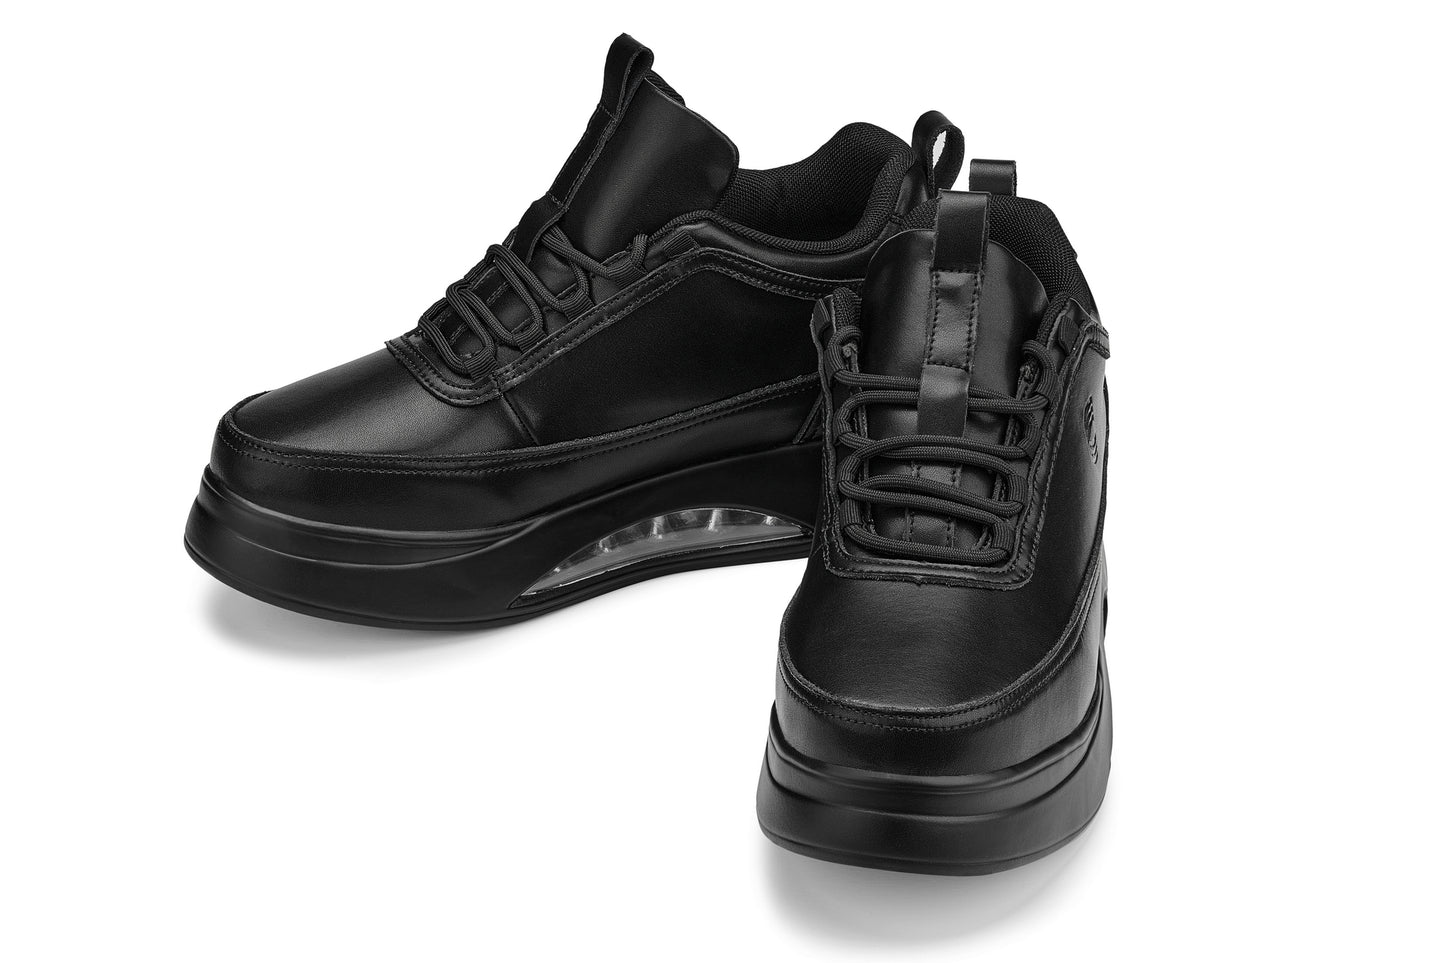 CALTO - S4925 - 3.2 pulgadas más alto (negro) - Zapatillas deportivas